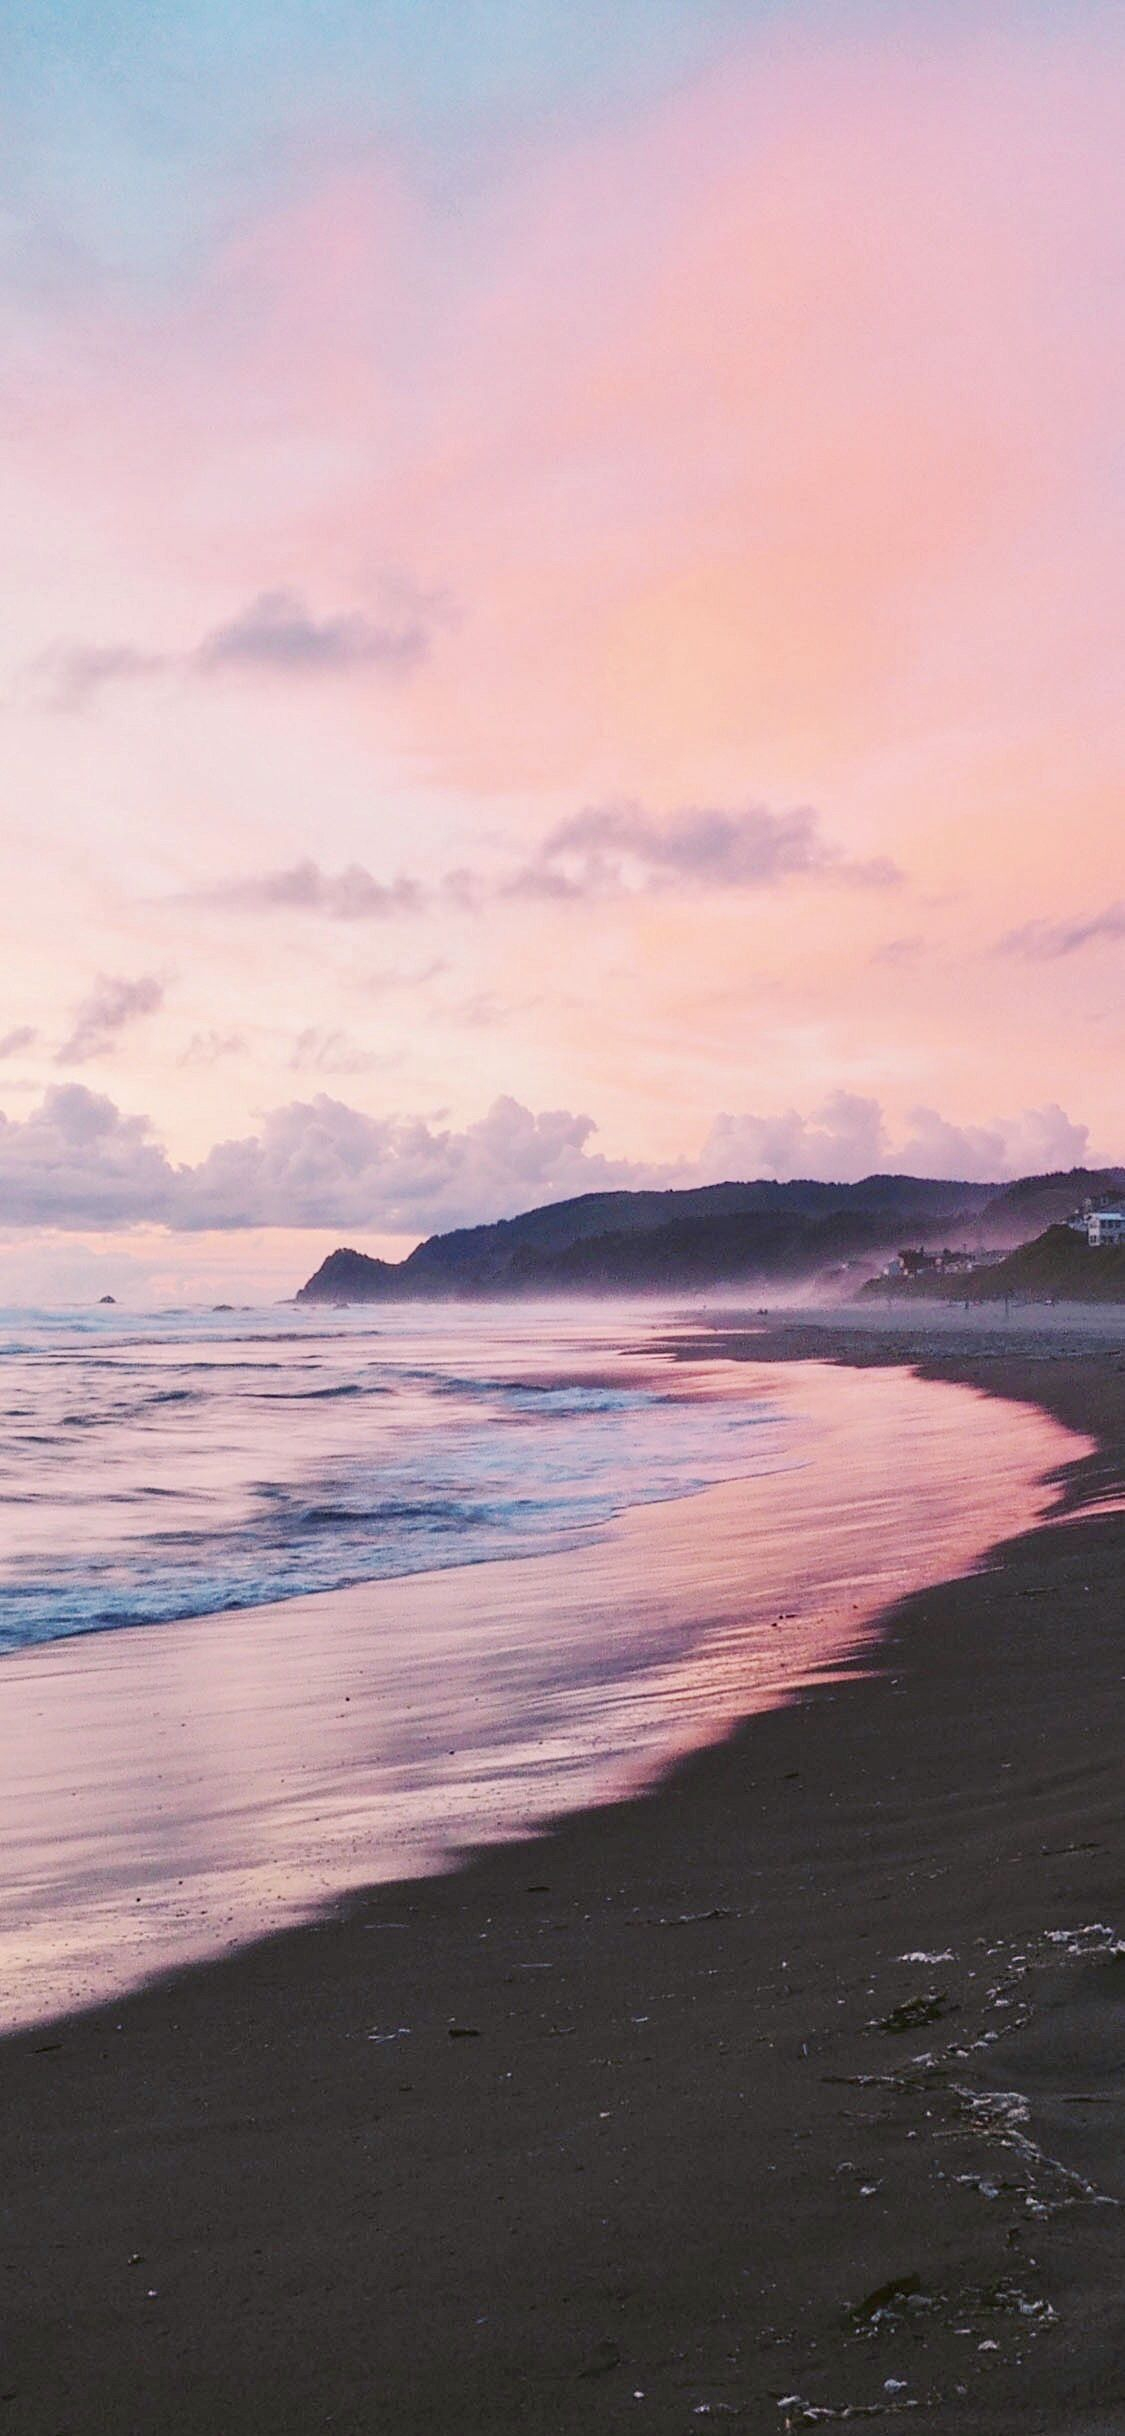 1125x2436 Pink sunset iPhone wallpaper | Beach wallpaper, Sunset iphone wallpaper, Sunset wallpaper